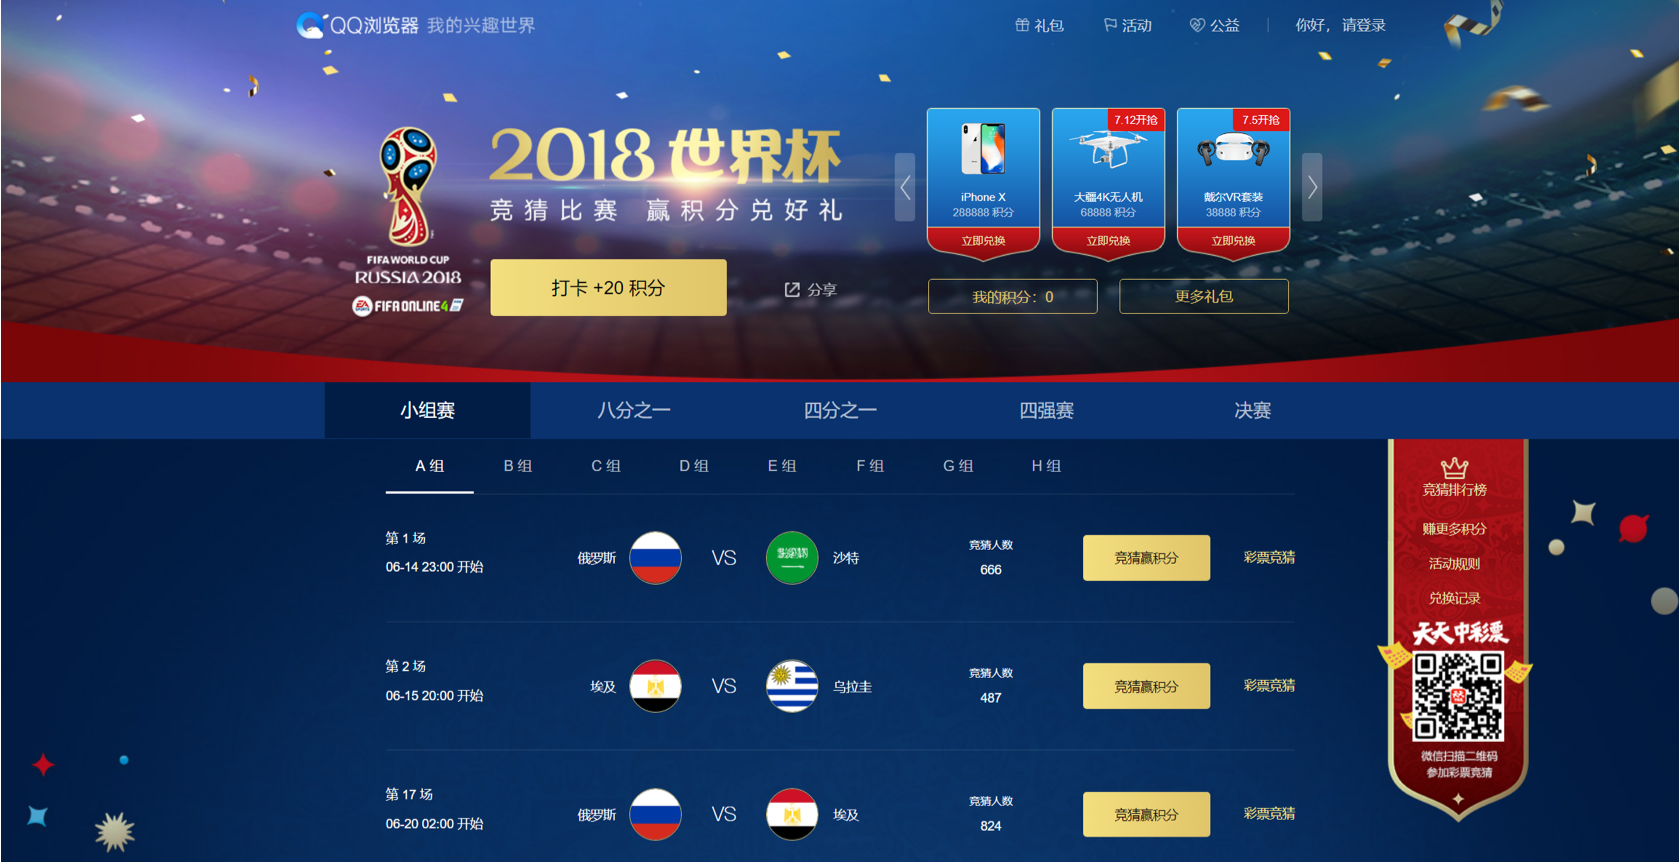 世界杯全民狂欢 QQ浏览器电脑版打卡竞猜赢iPhone X好礼